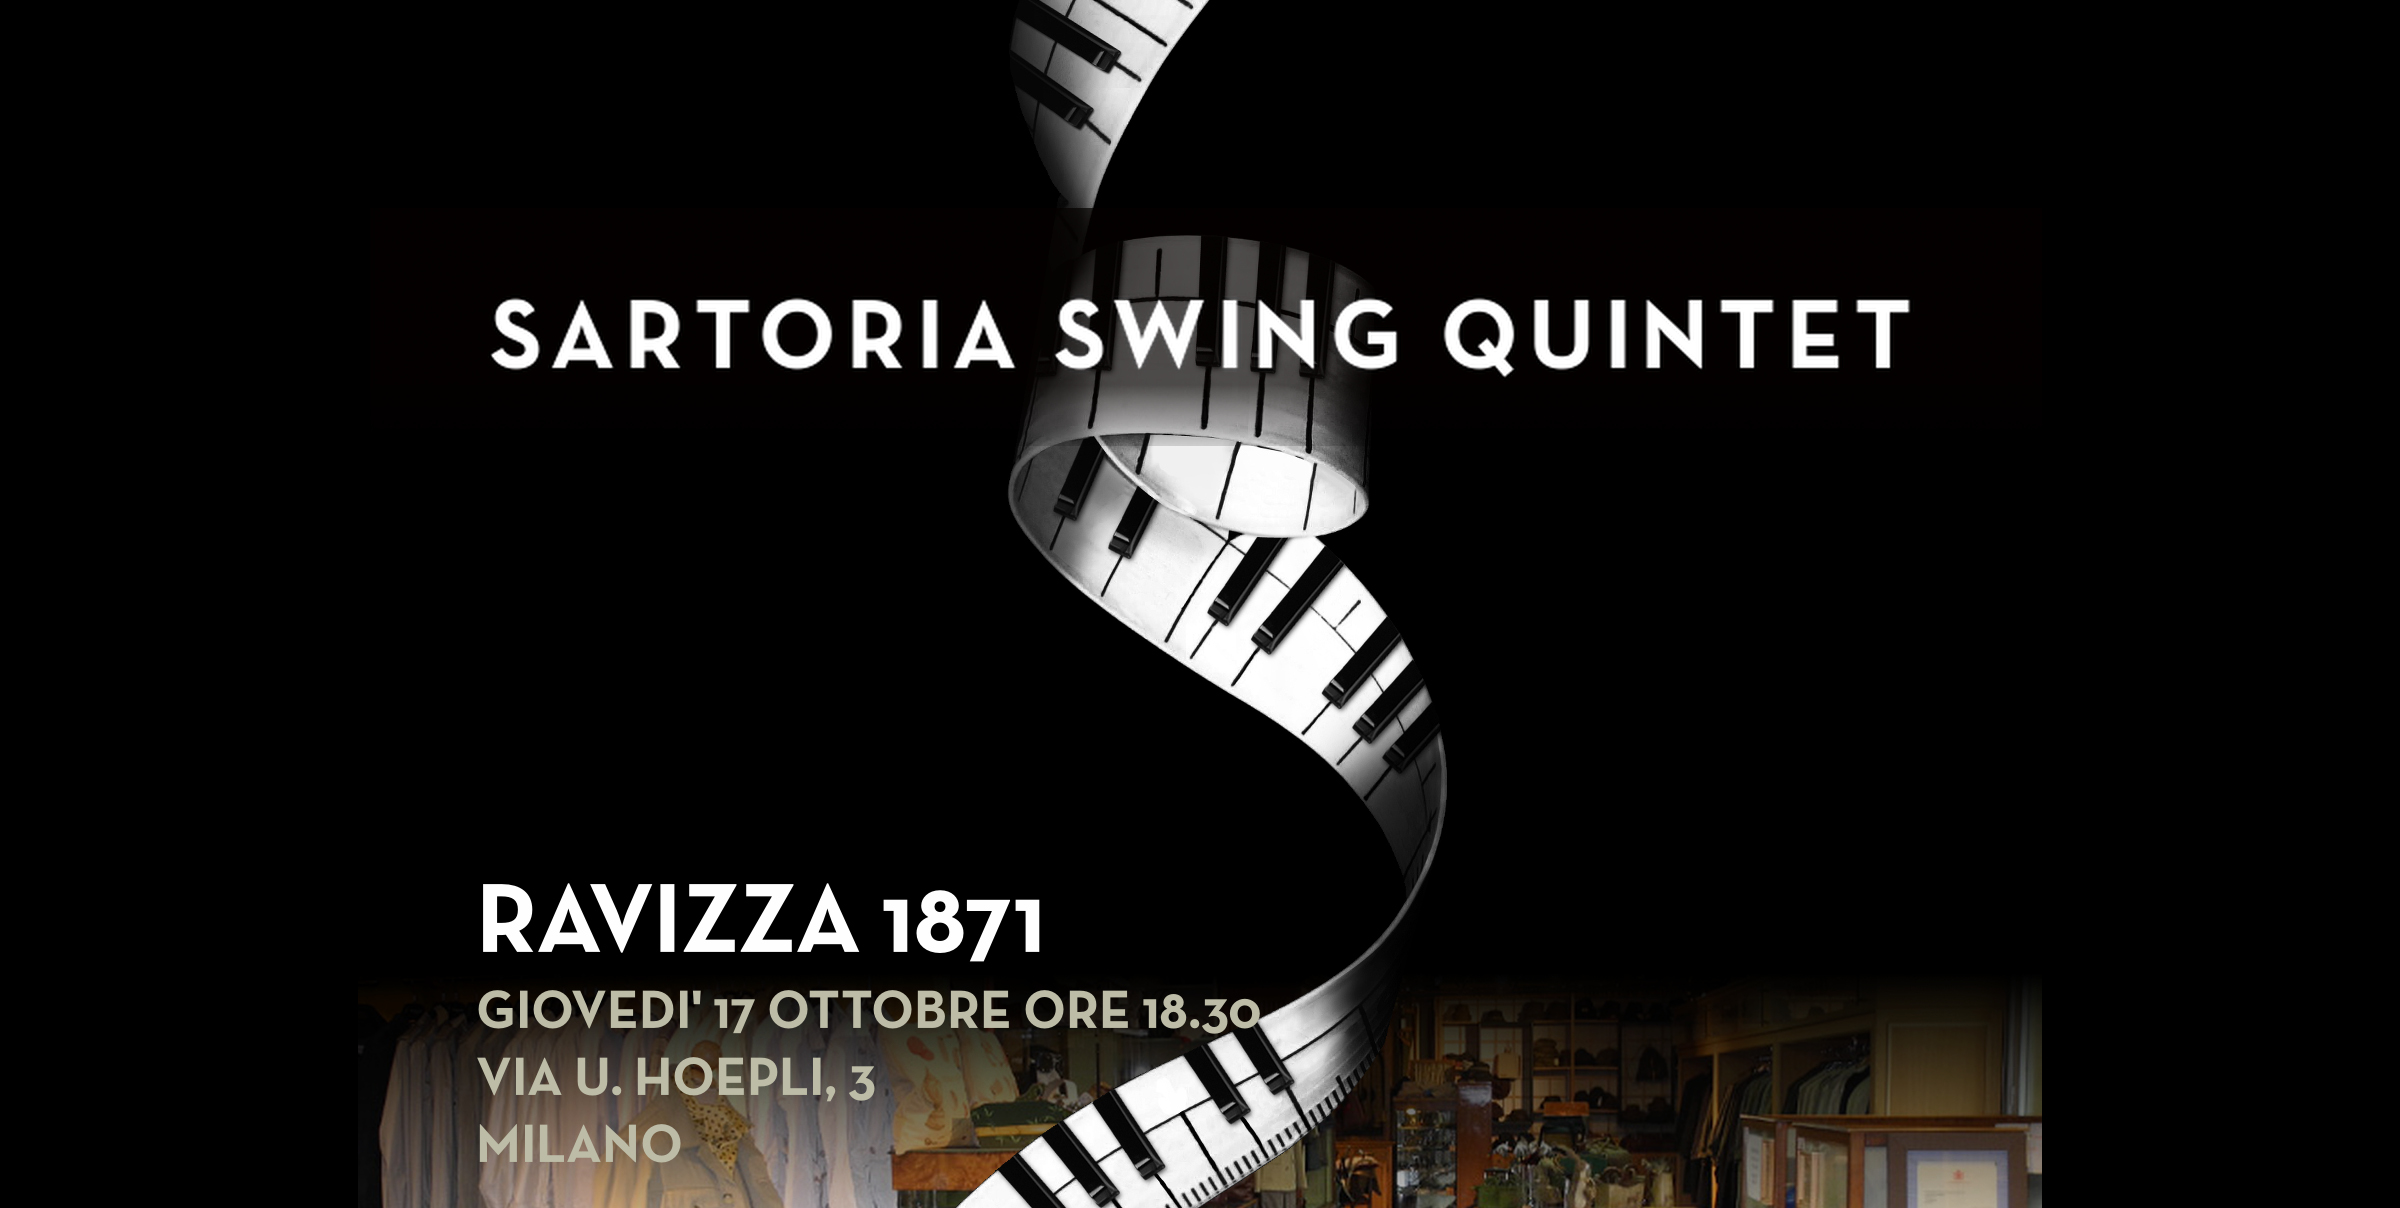 Inedita location per Sartoria della Musica Swing Quintet: il Ravizza 1871